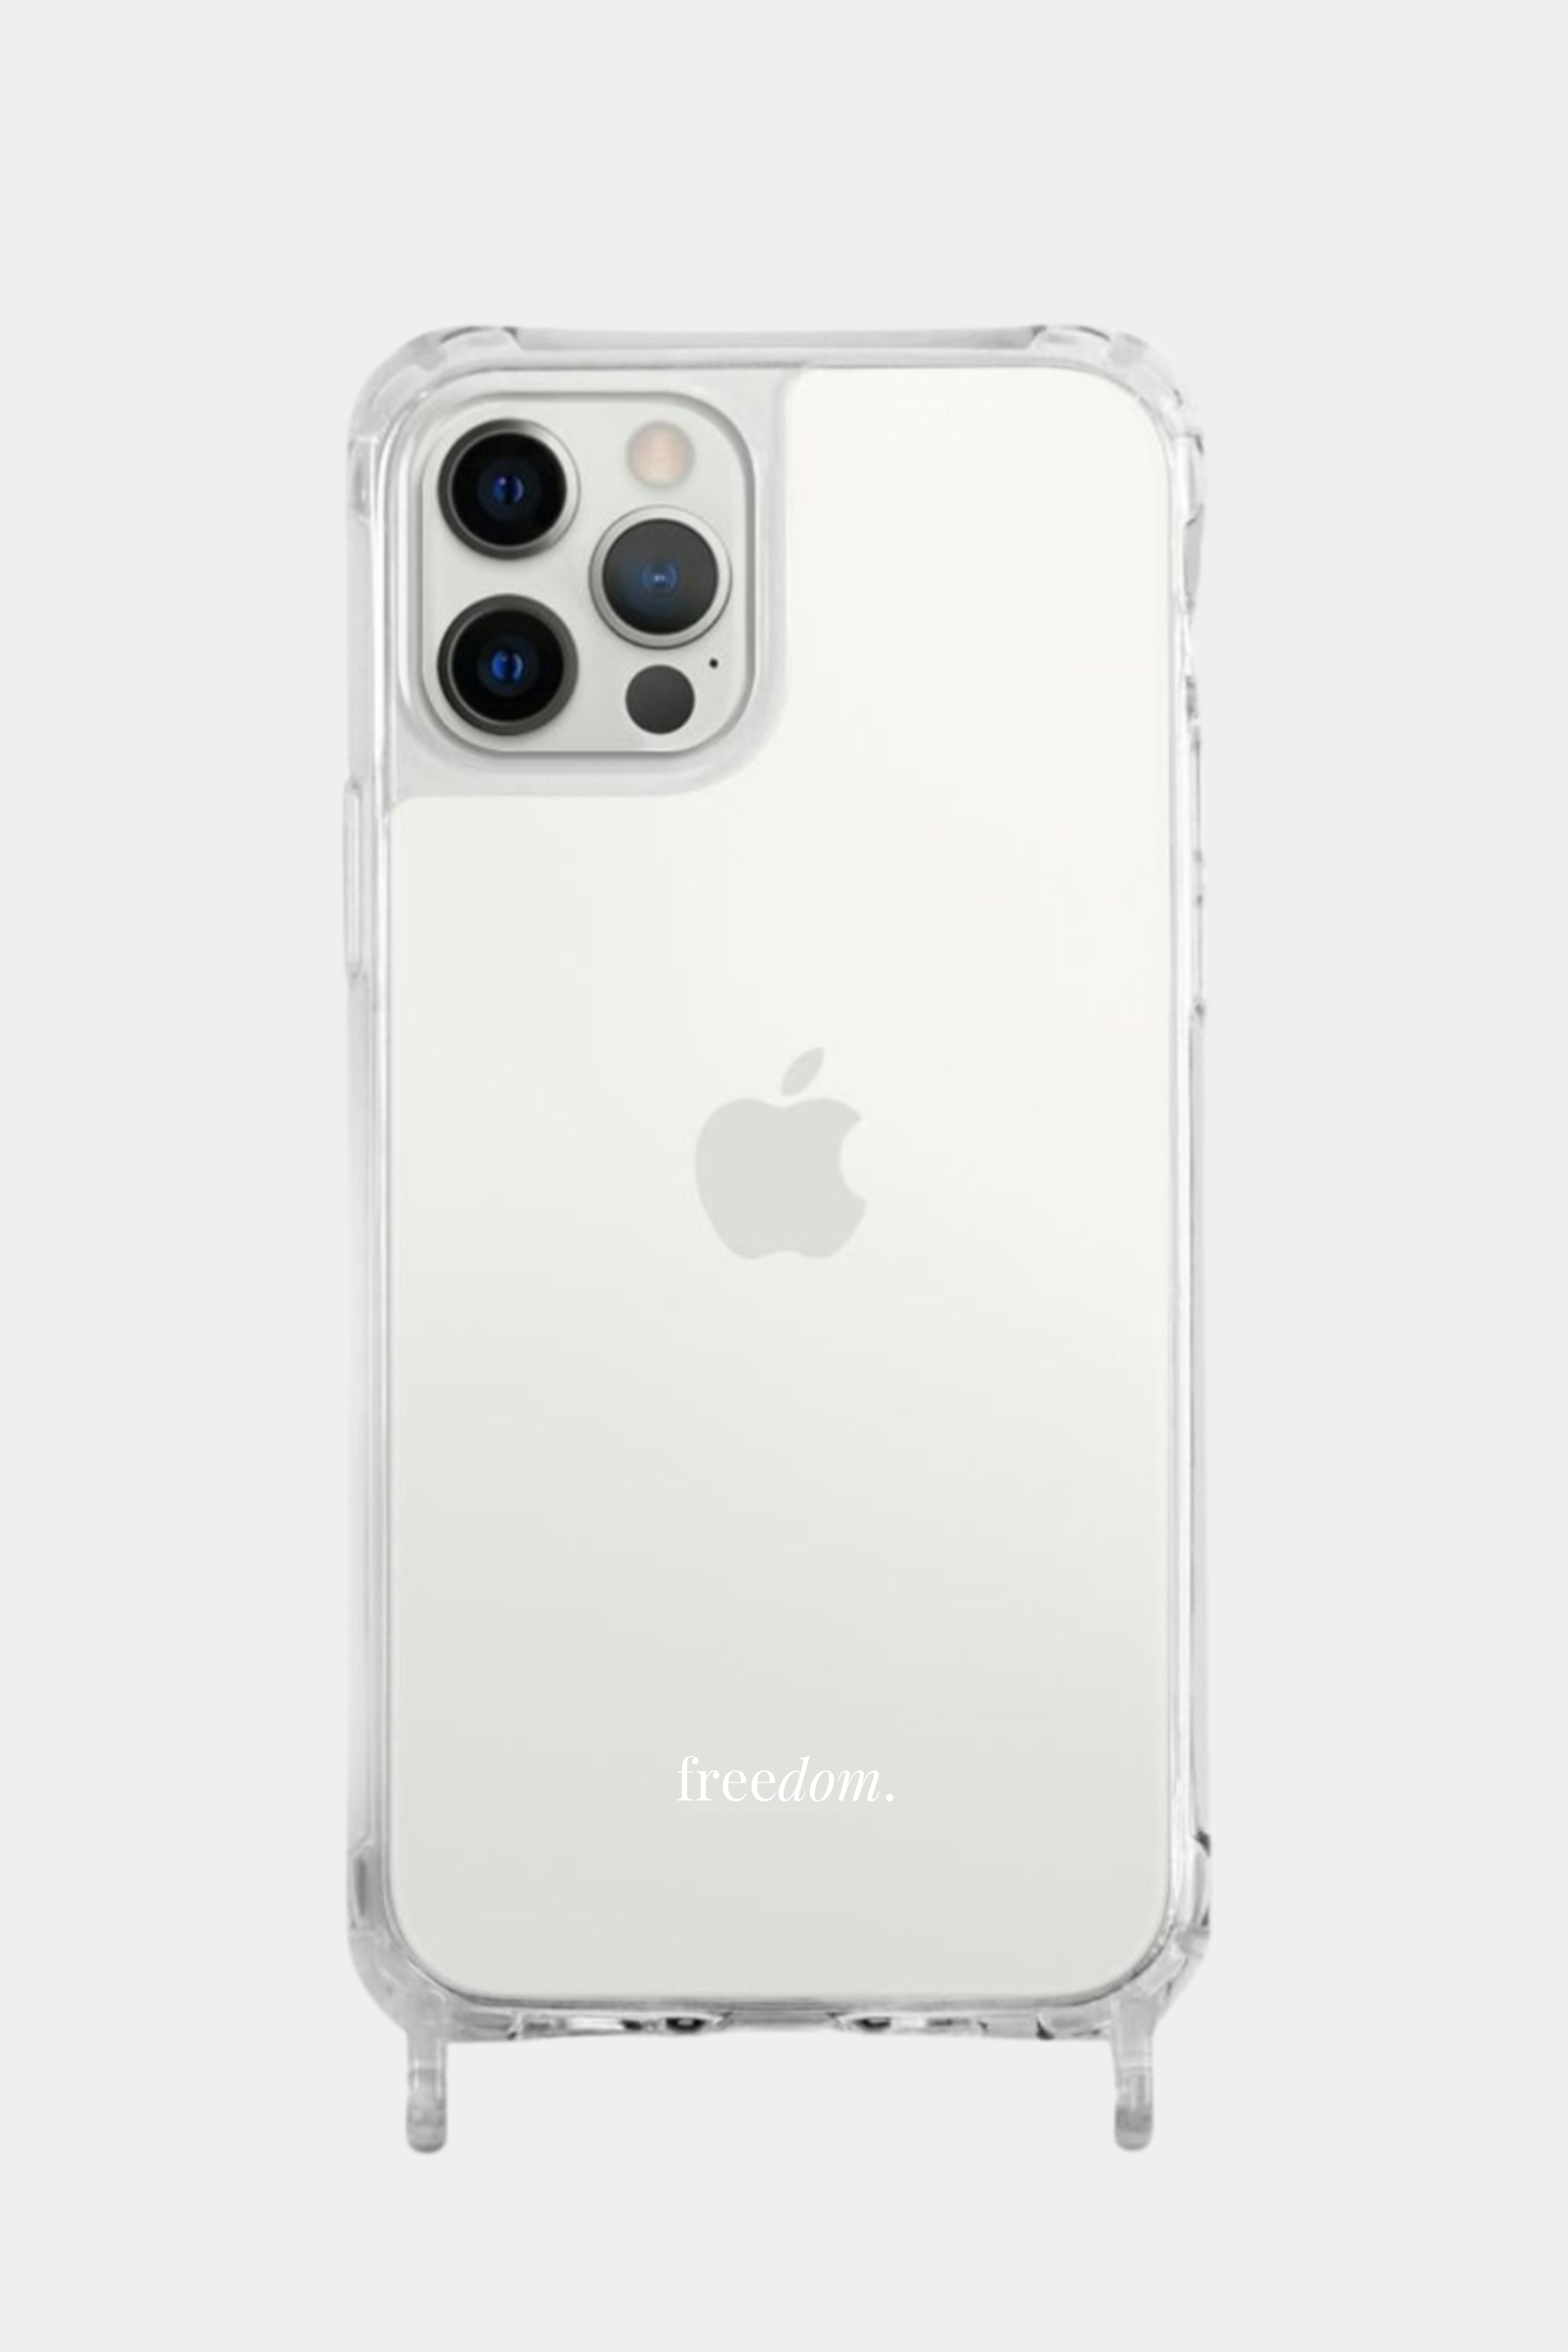 iPhone 13 Case